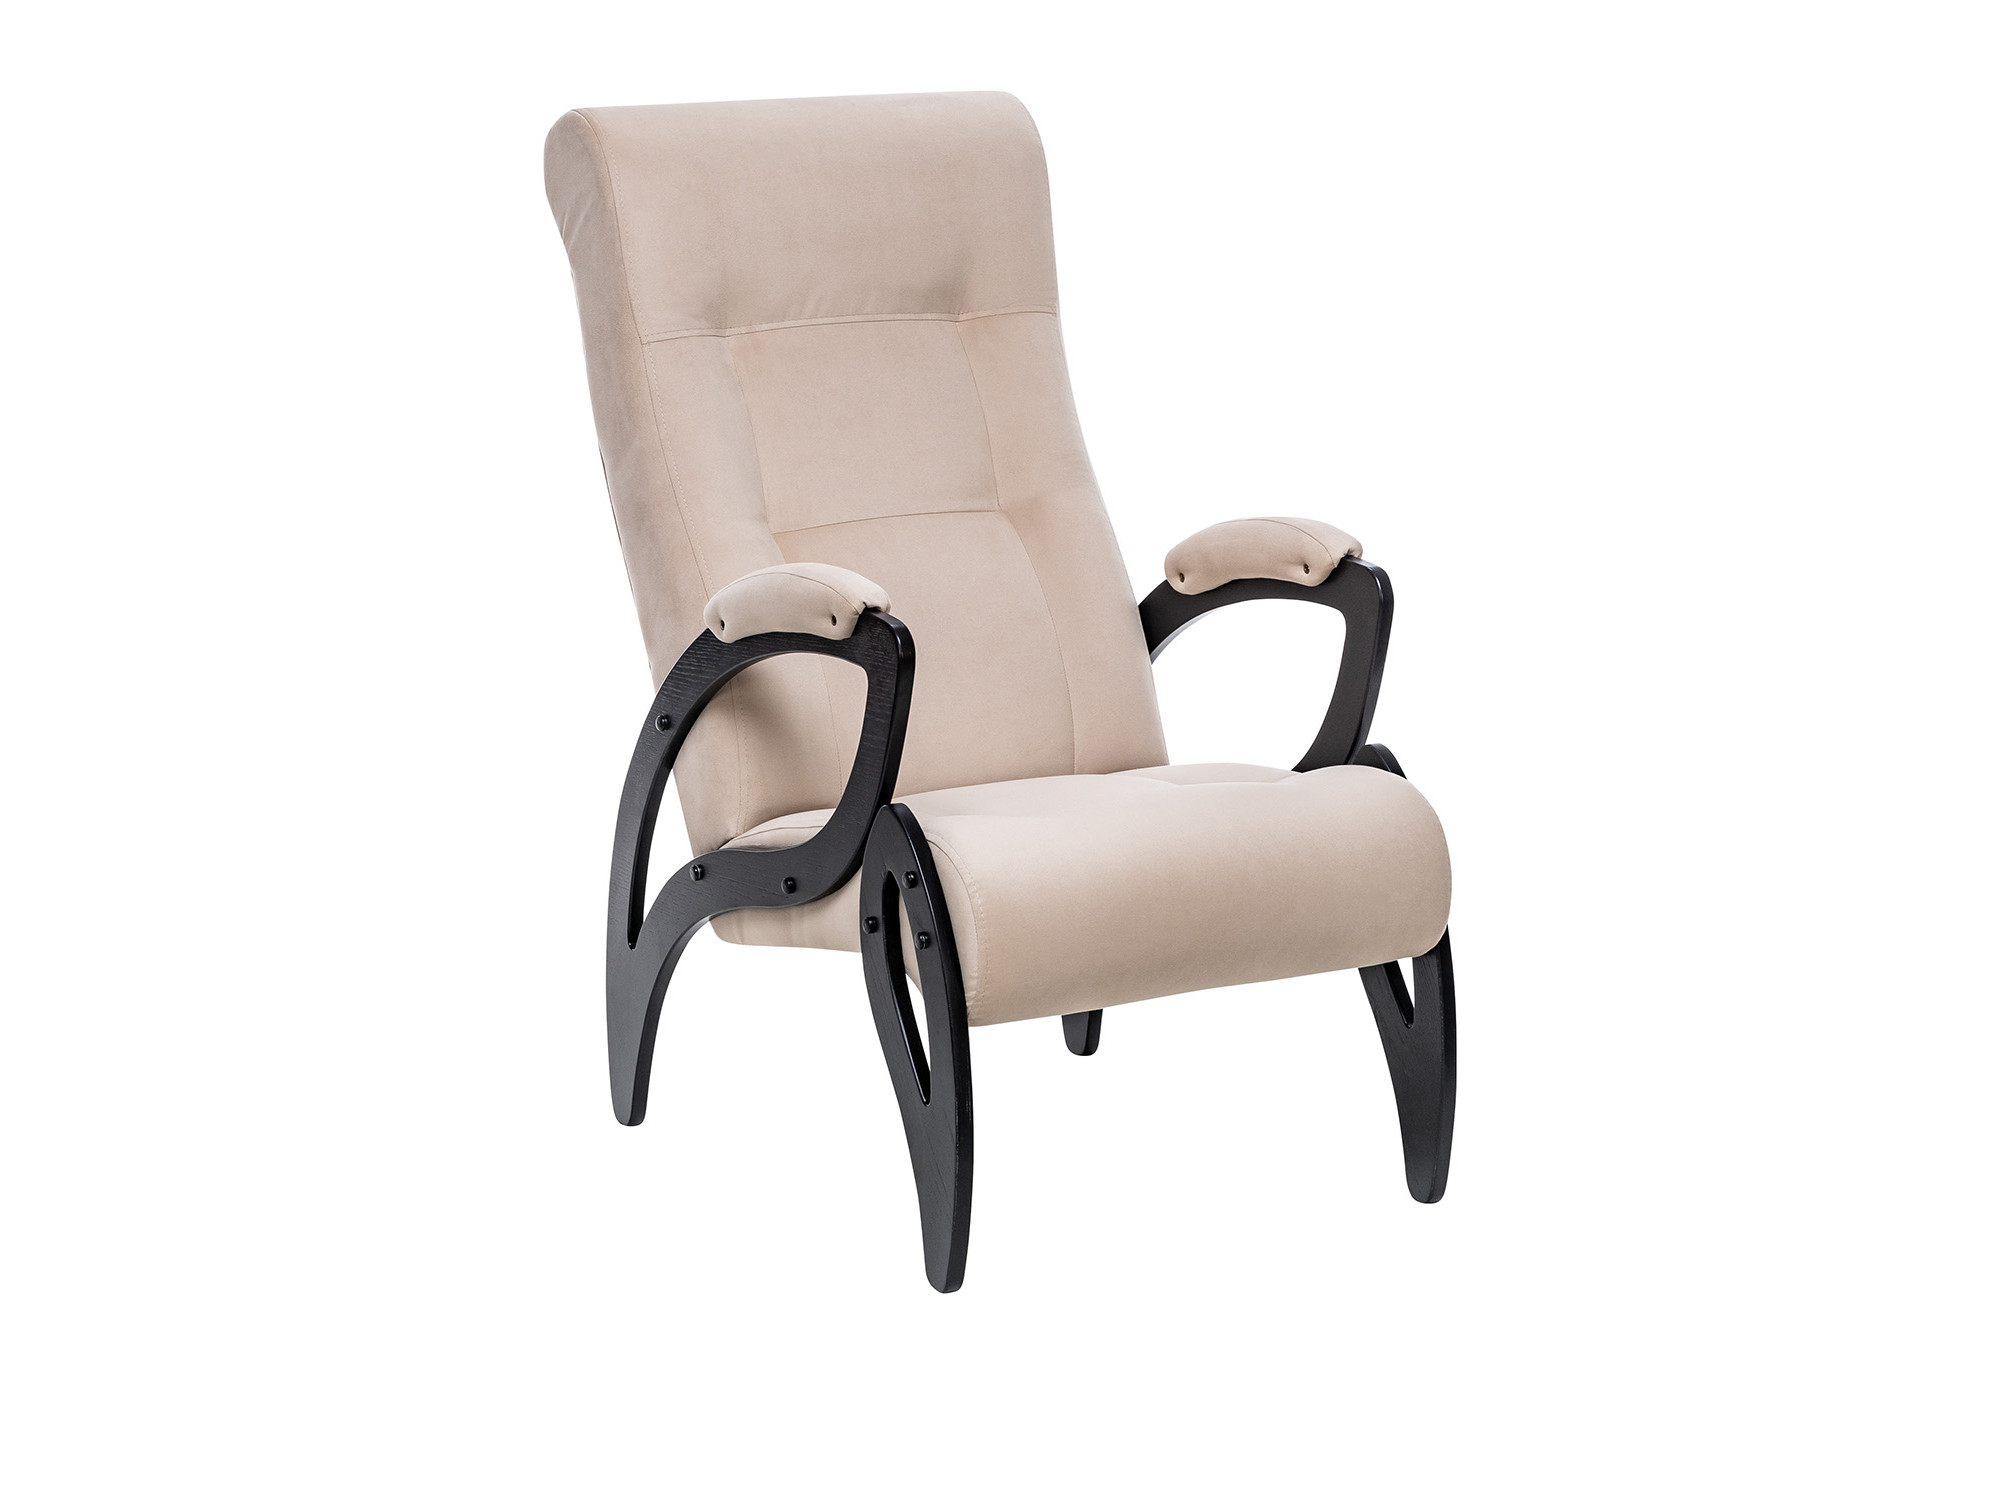 Кресло для отдыха Модель 51 MebelVia V18 бежевый, Ткань Велюр, Шпон, Лак, Фанера кресло качалка модель 67 венге ткань v 32 mebelvia v32 серый ткань велюр фанера шпон лак